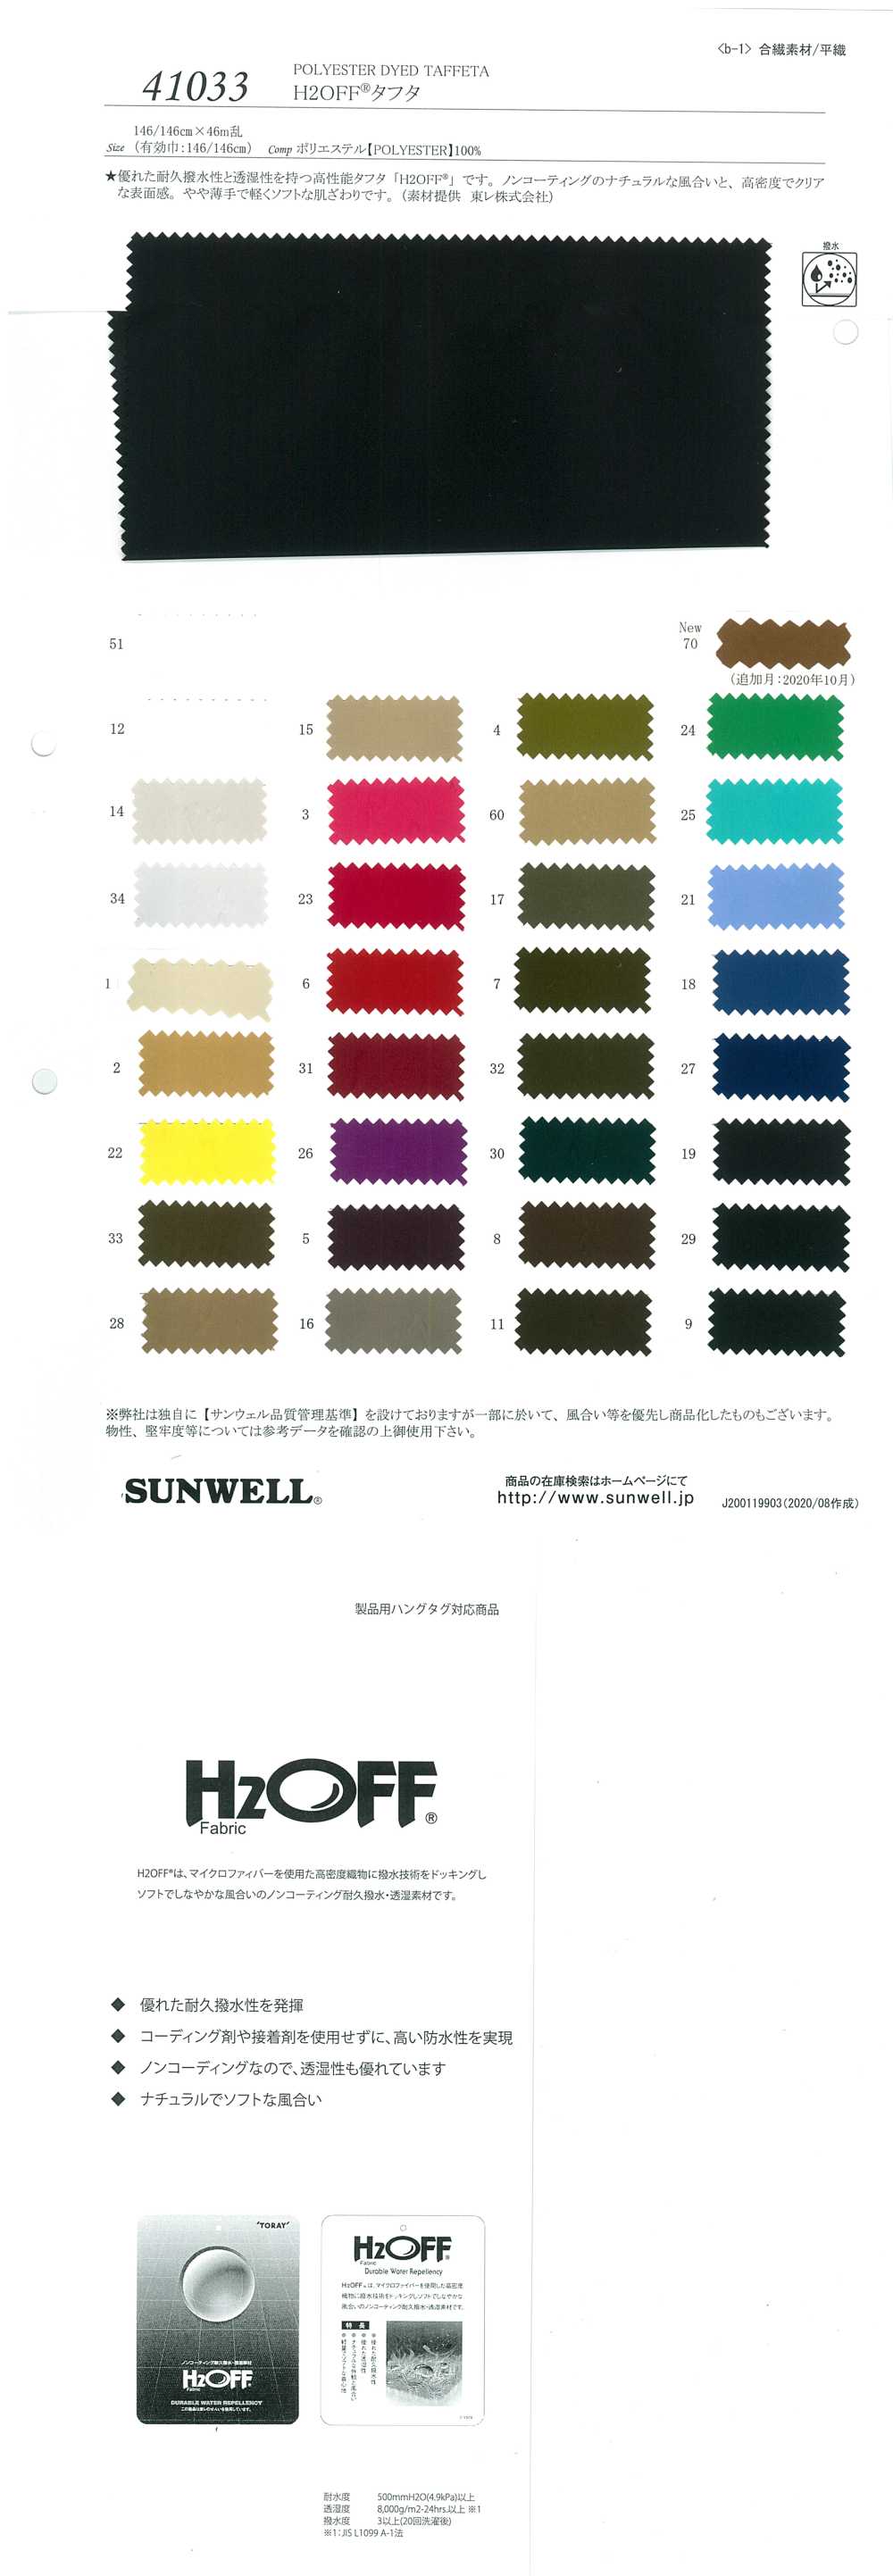 41033 H2OFF(R) Taffeta[Textile / Fabric] SUNWELL